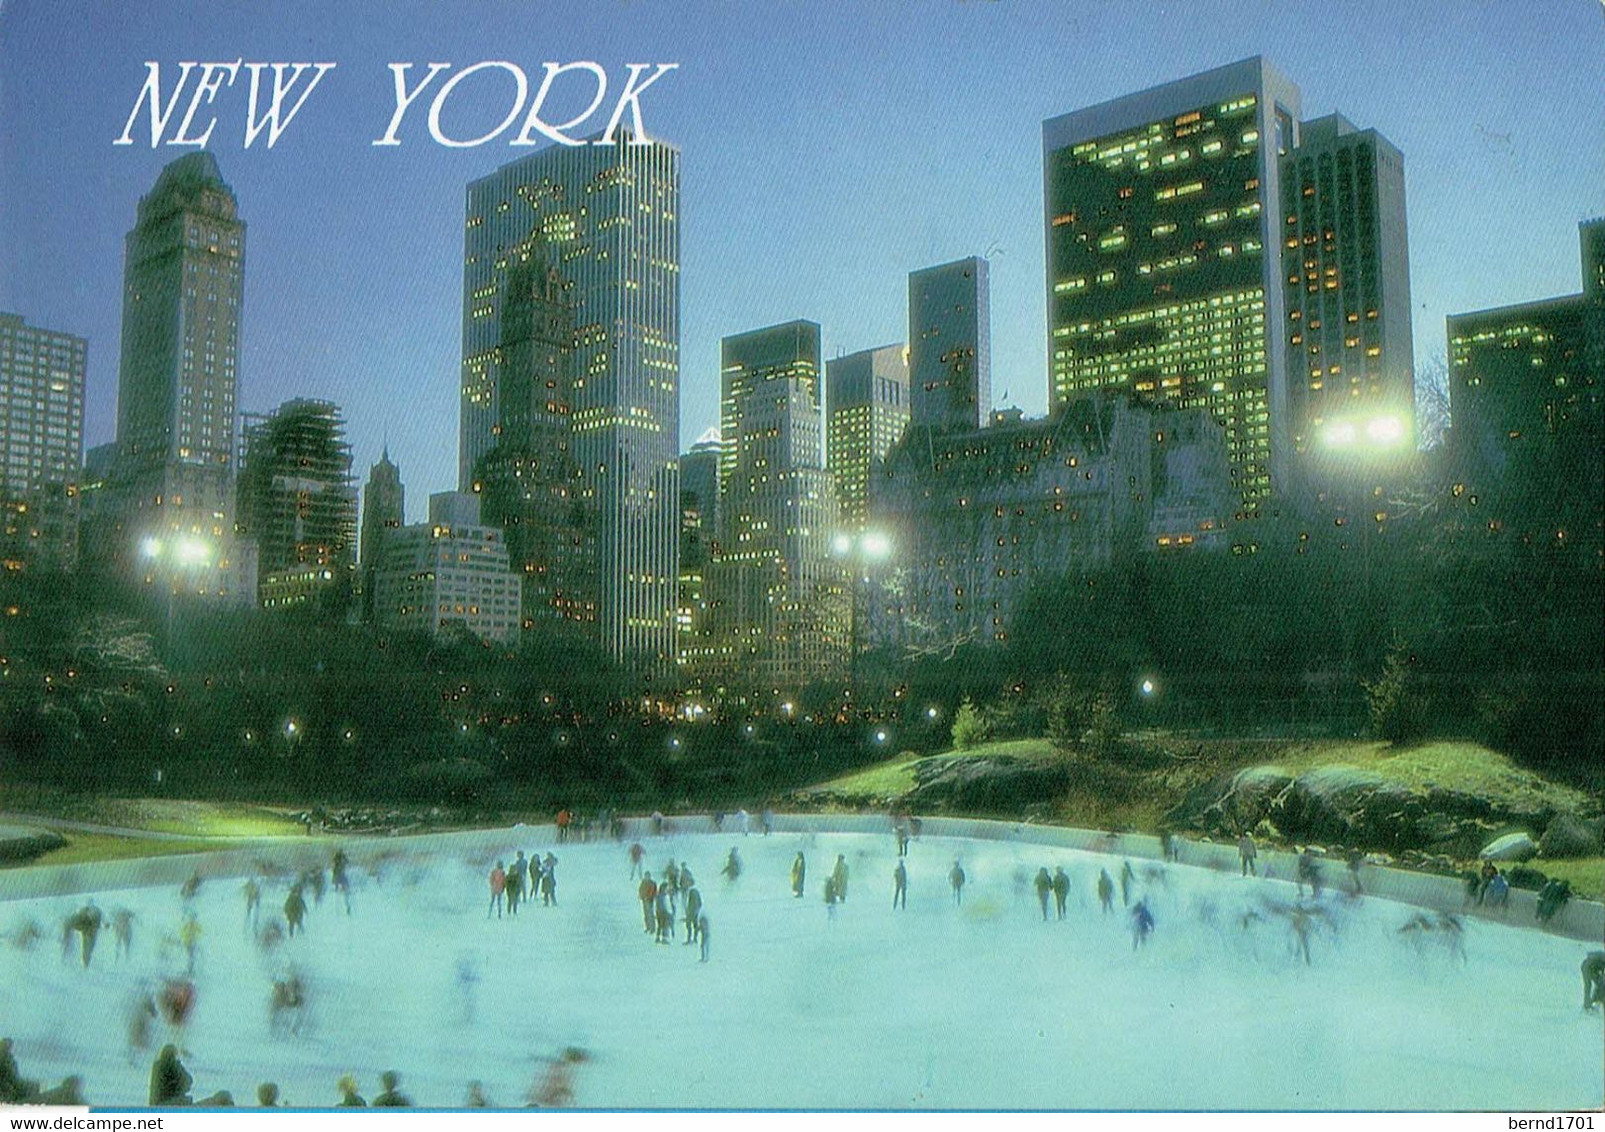 New York # Ansichtskarte Ungebraucht / View Card Mint (I1369) - Central Park